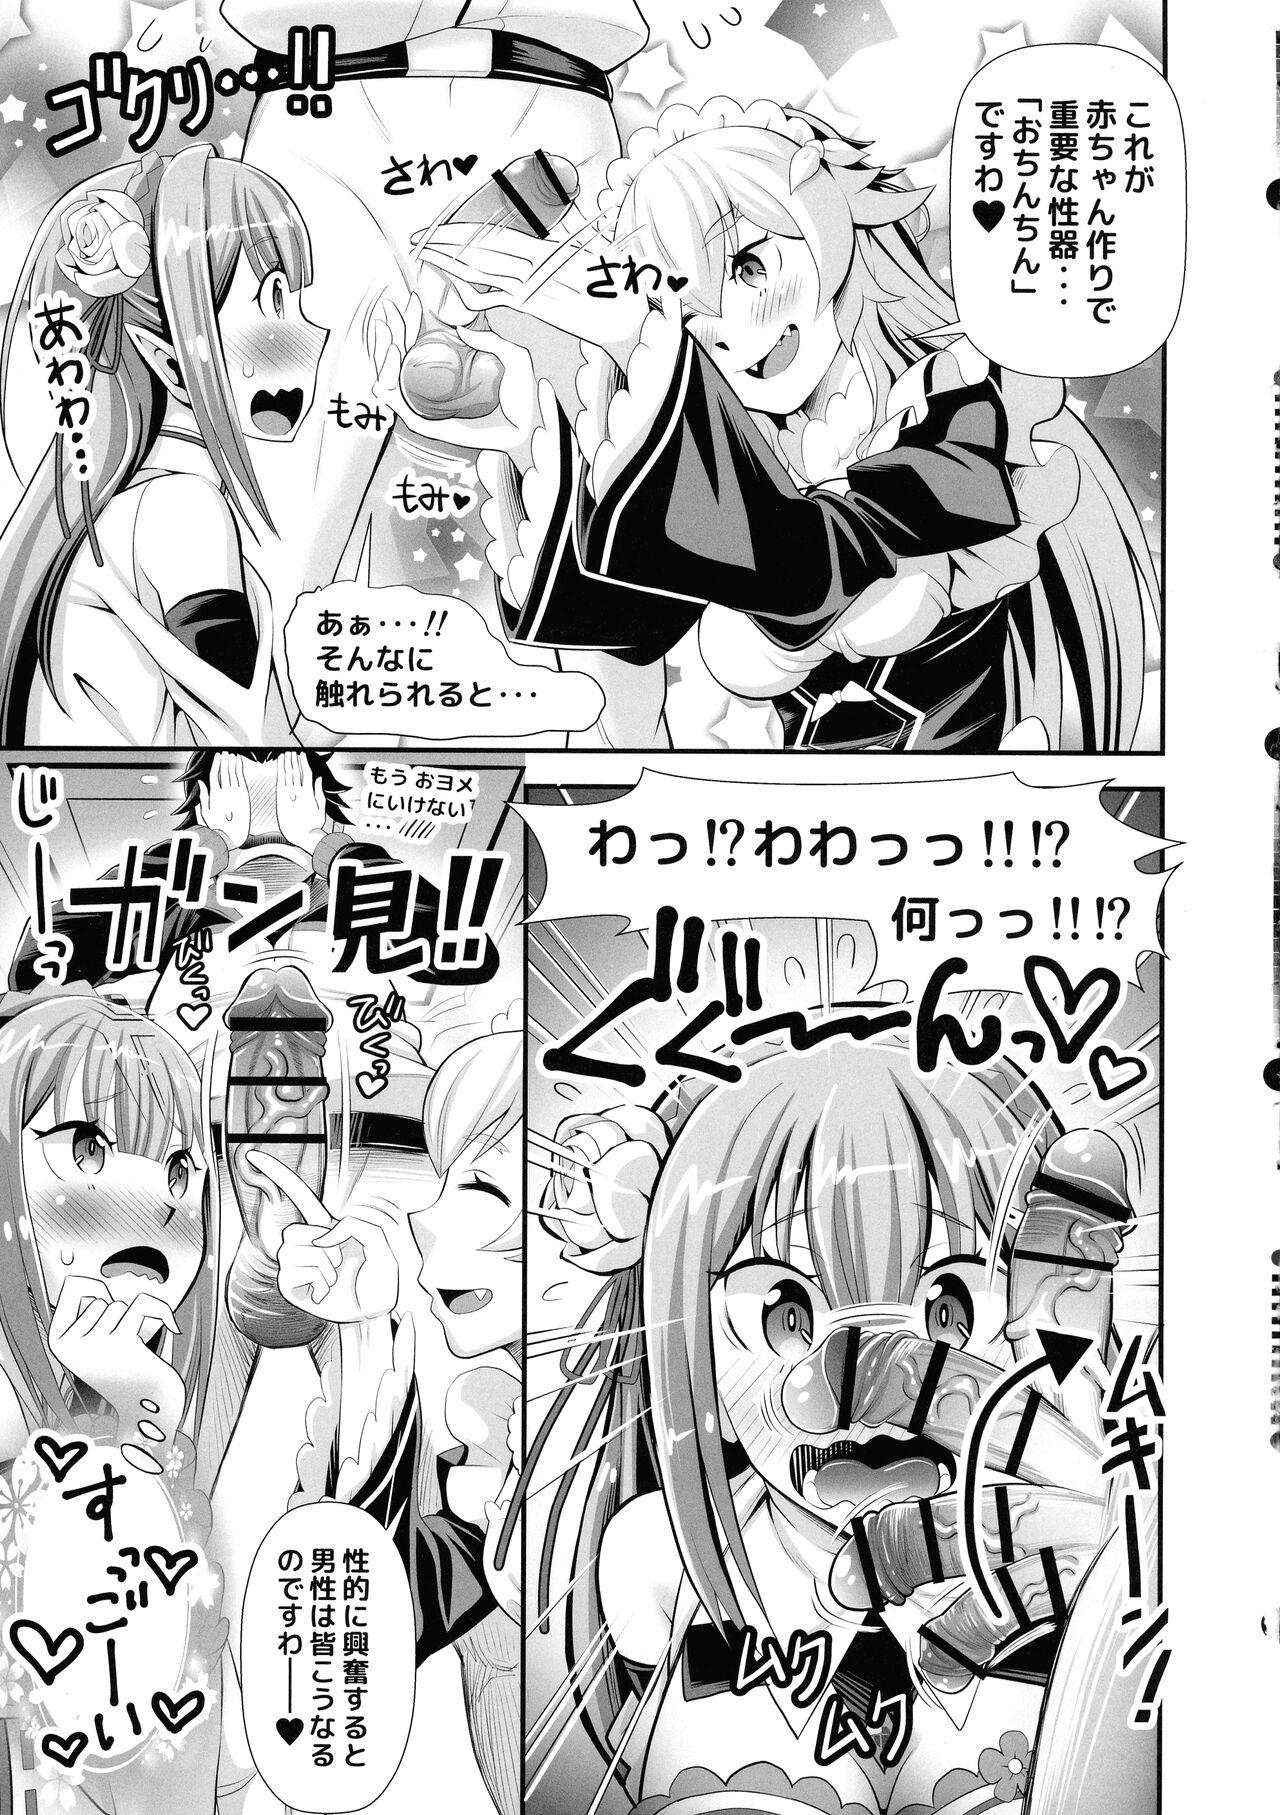 Toilet Re: Zero na Maid-san vol. 3 - Re zero kara hajimeru isekai seikatsu Freeporn - Page 7